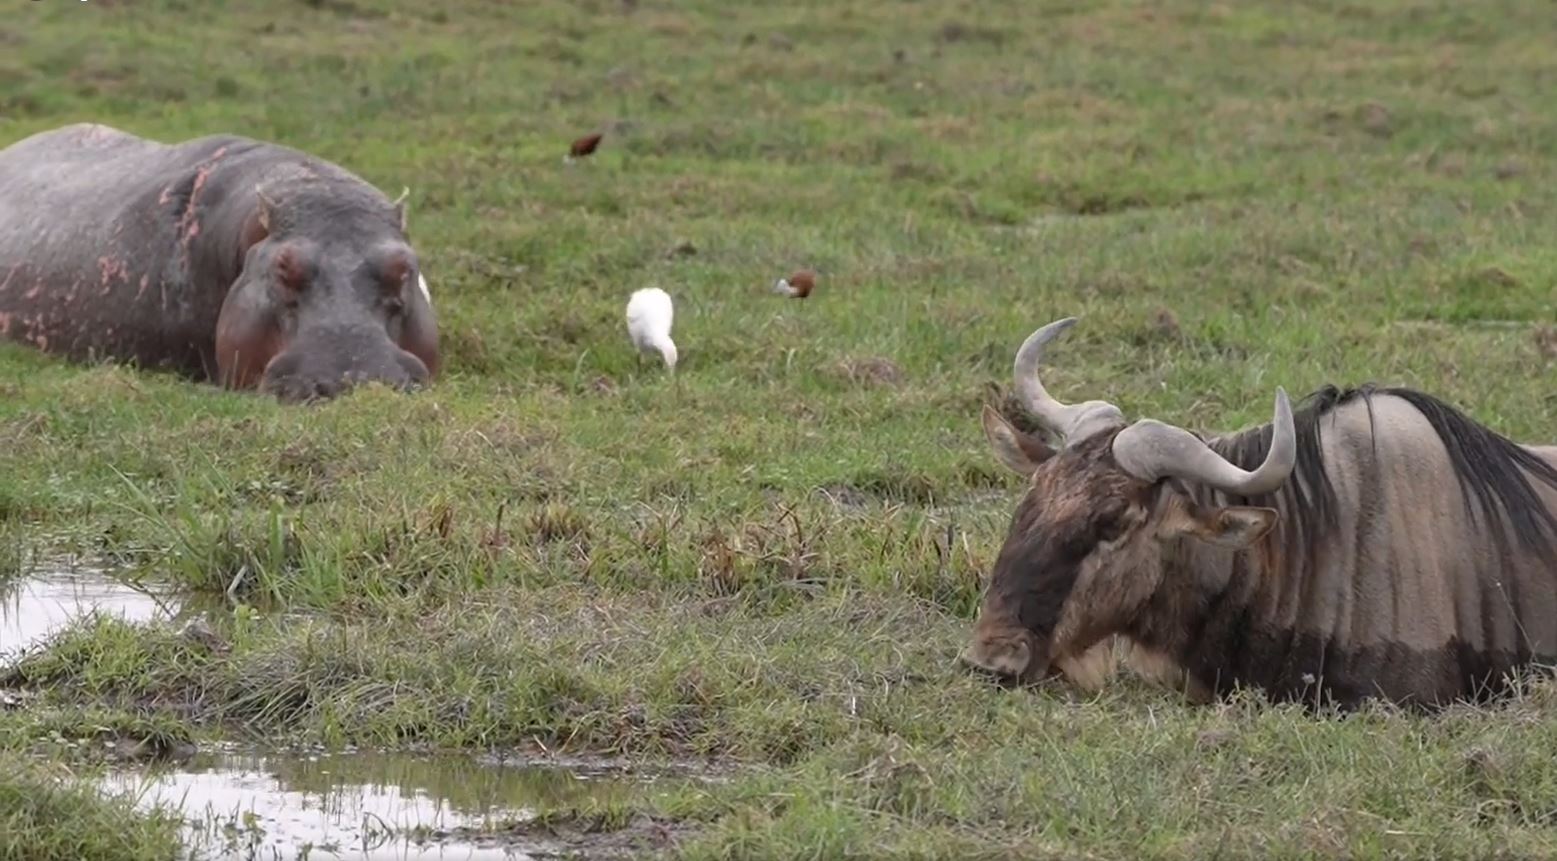 Hier gibt es zahlreiche Hippos, Elefanten und andere Tiere, die wir gerade fotografieren. Fotoreise durch die Wildnis Kenias.